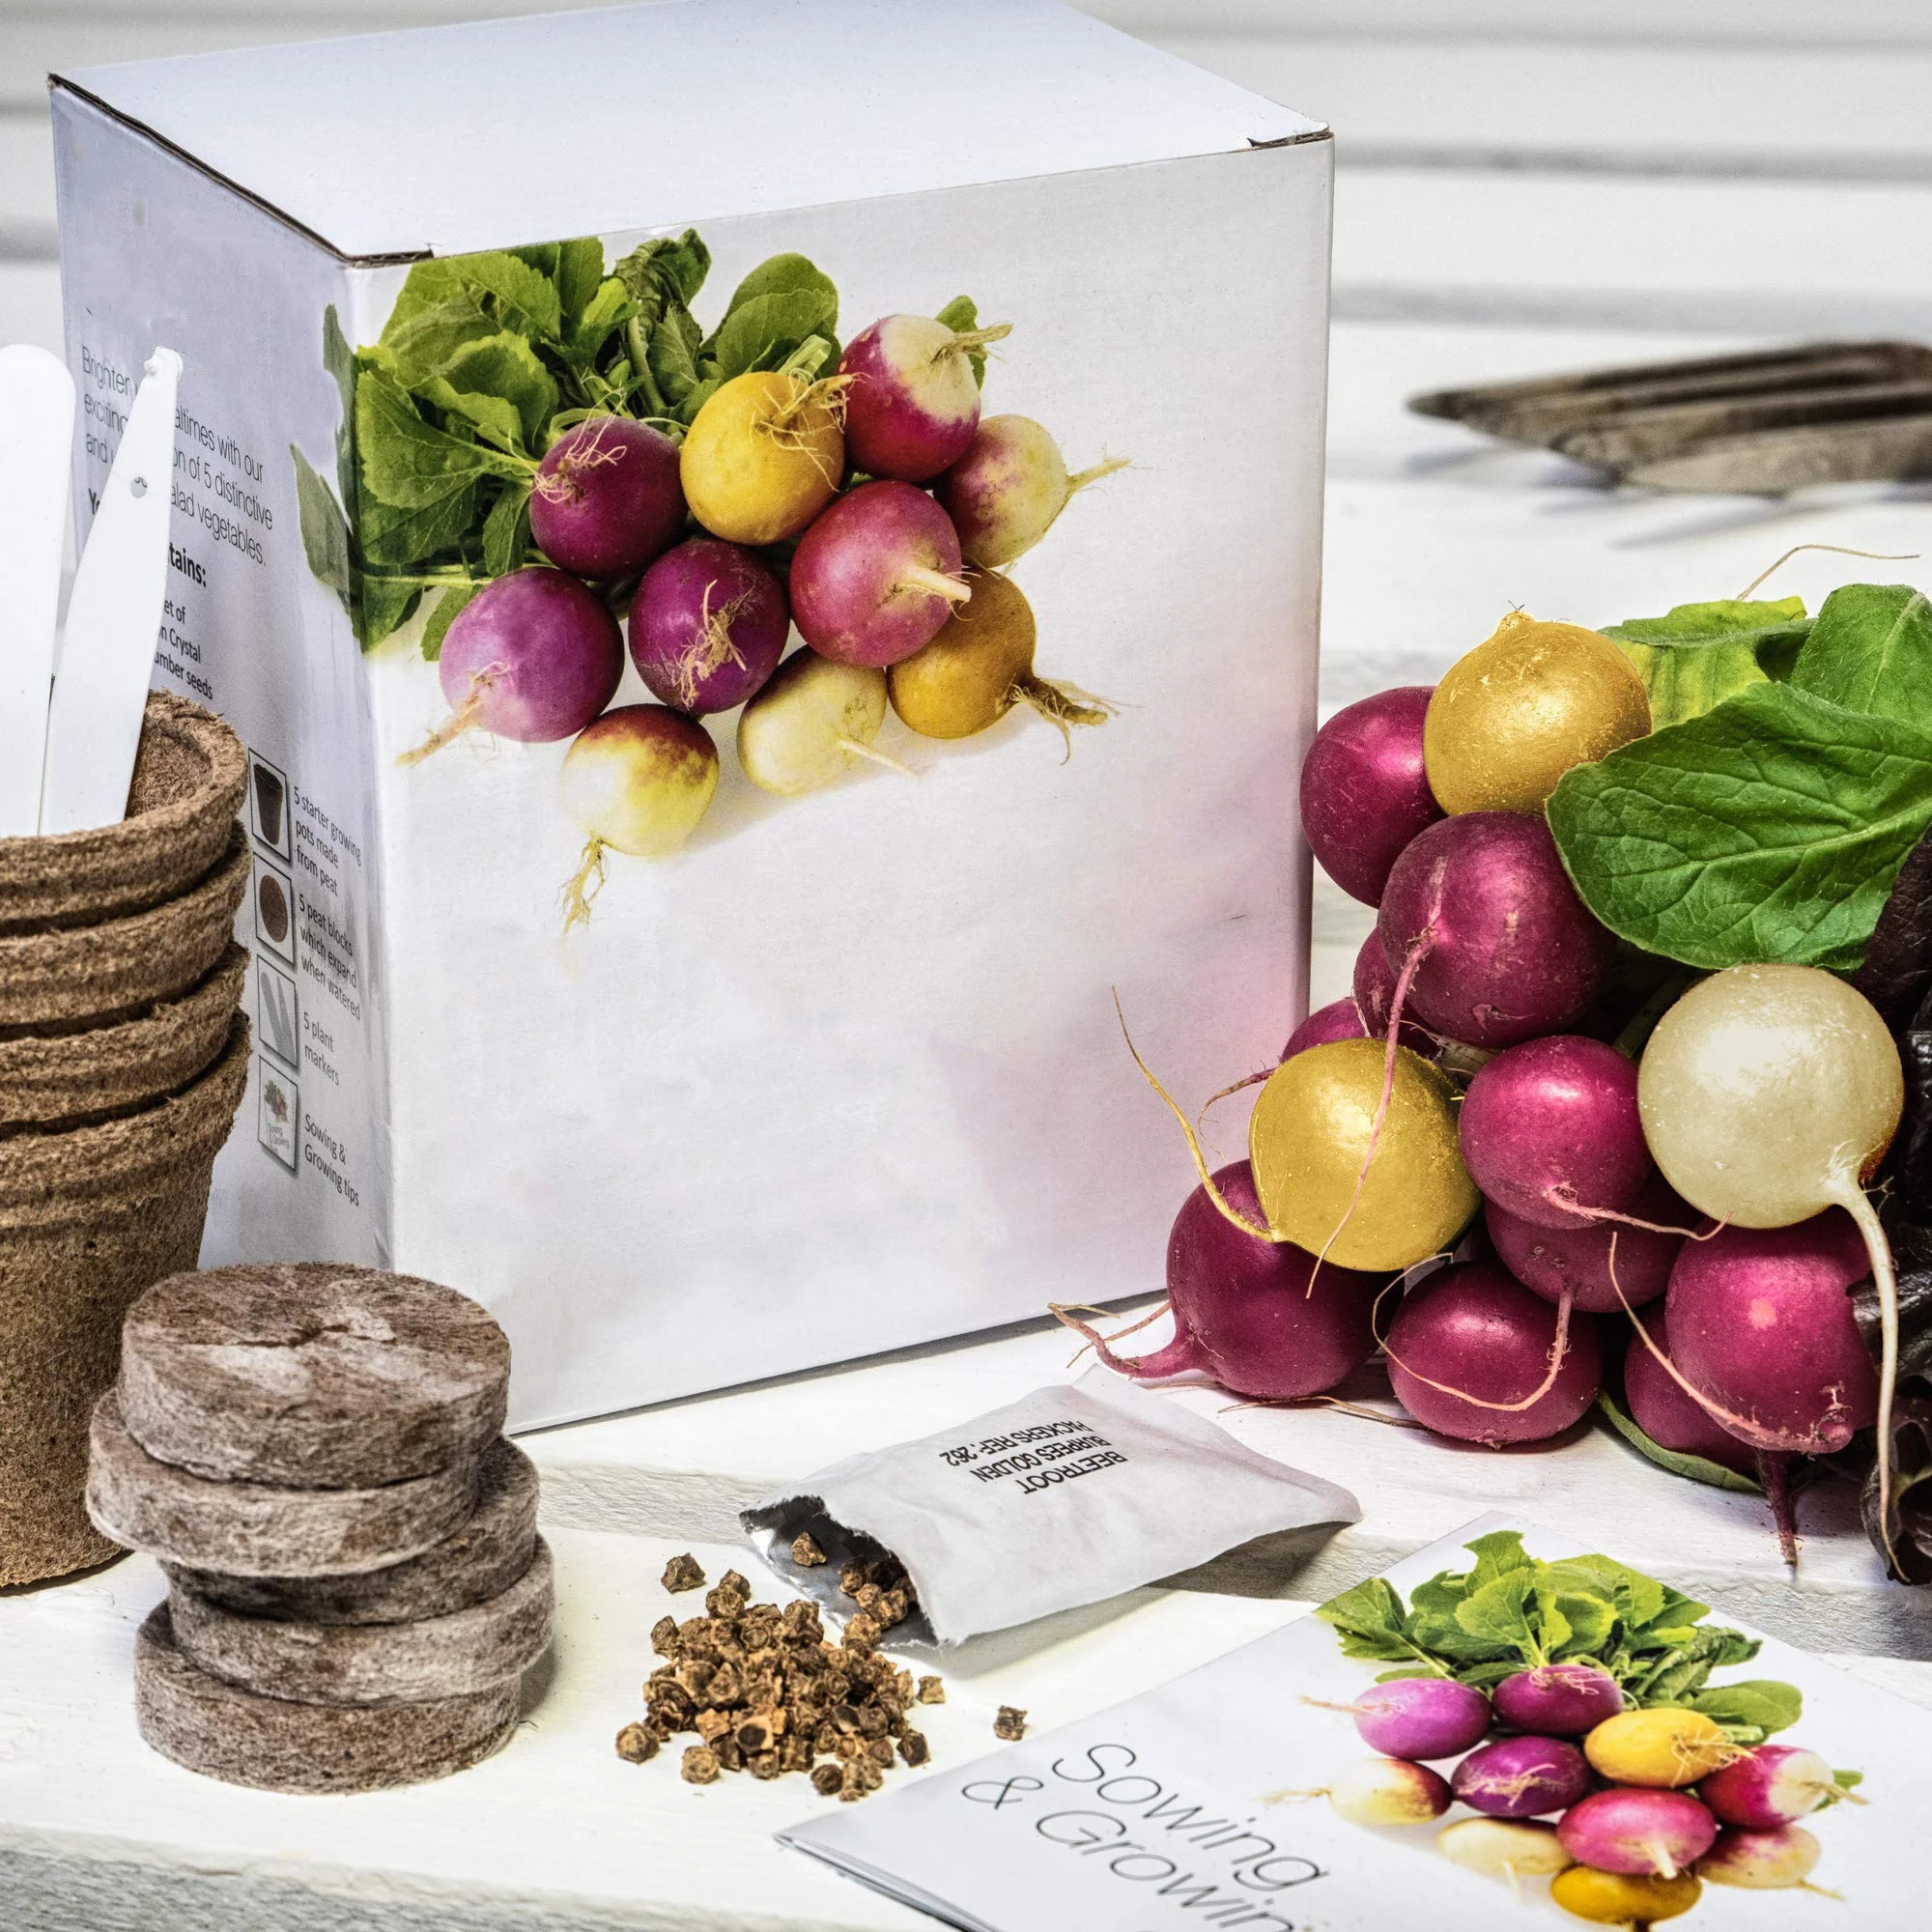 Amazon top selling Fantastic Salad Vegetables seed Kit